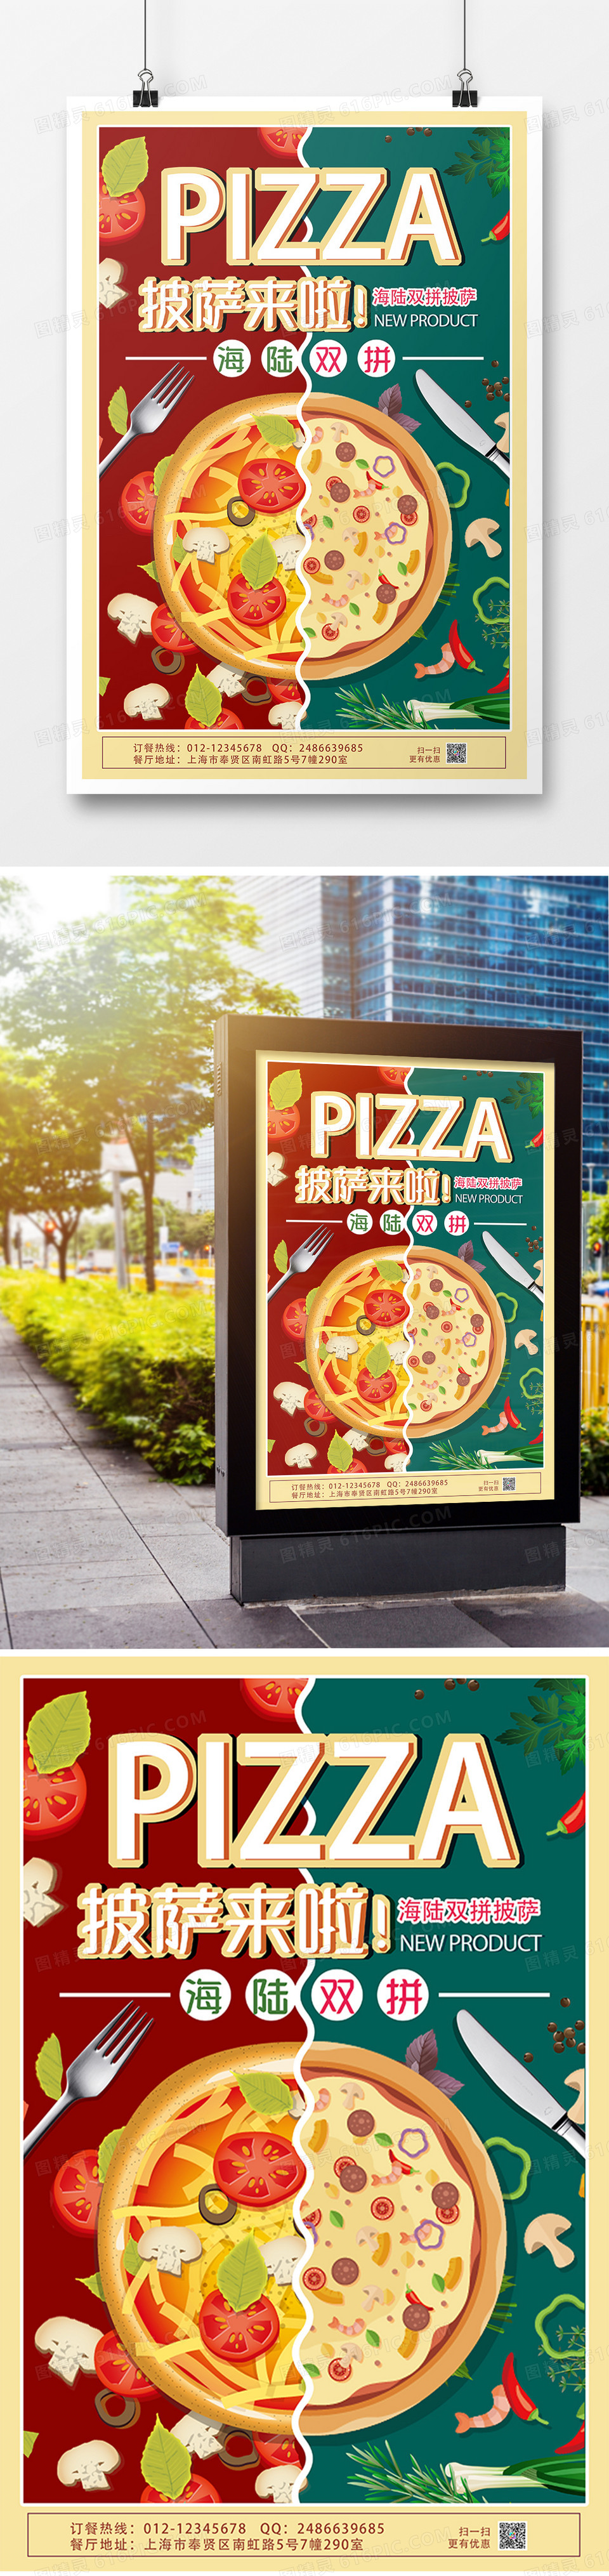 双拼披萨创意美食海报